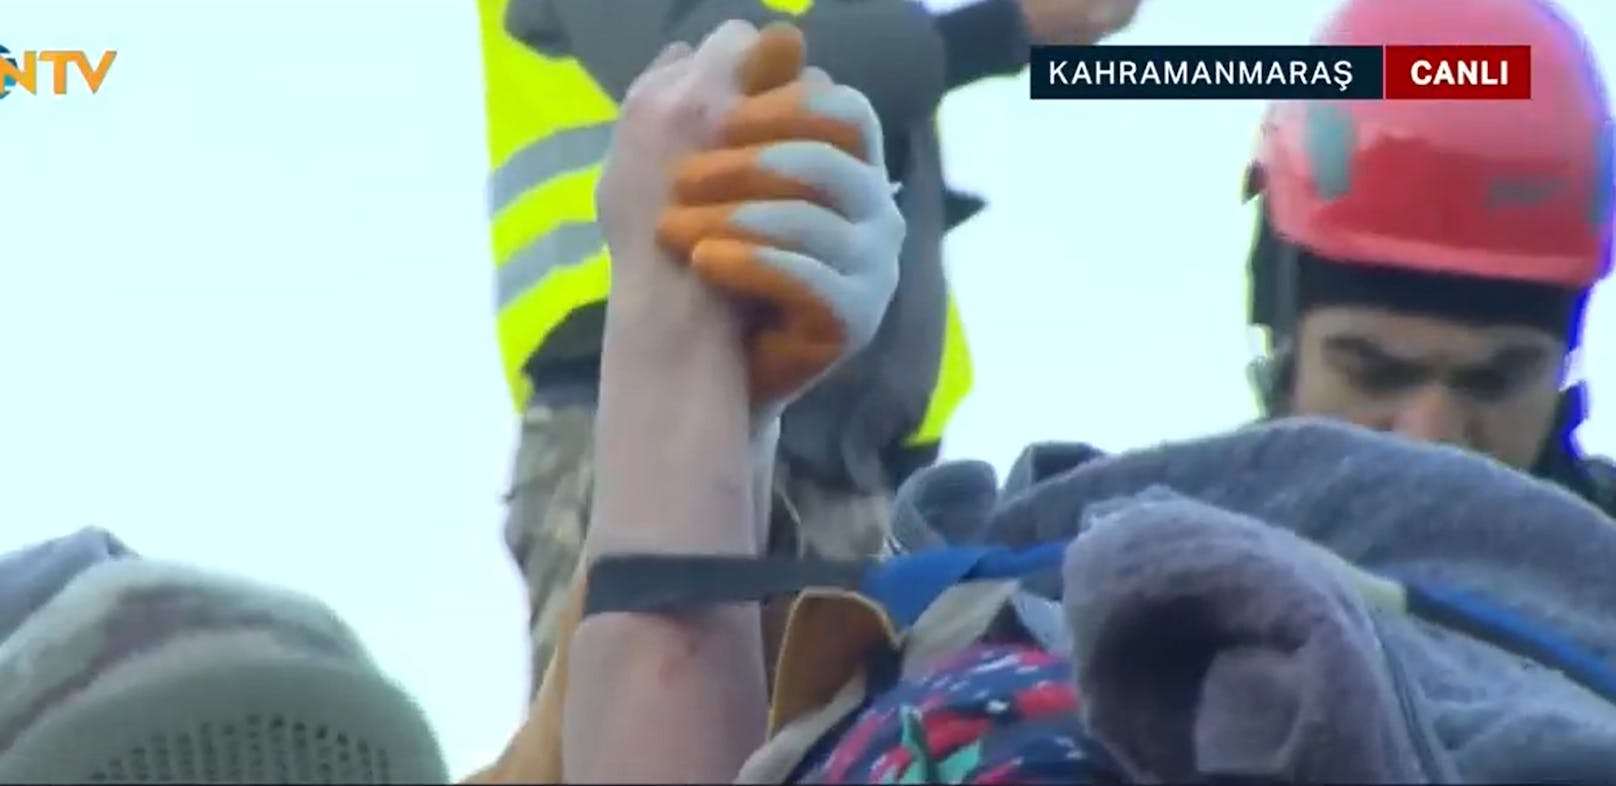 Bilder des Senders NTV zeigten am Mittwoch, wie die Einsatzkräfte in der Provinz Kahramanmaras die Frau auf einer Trage zur Ambulanz trugen. 